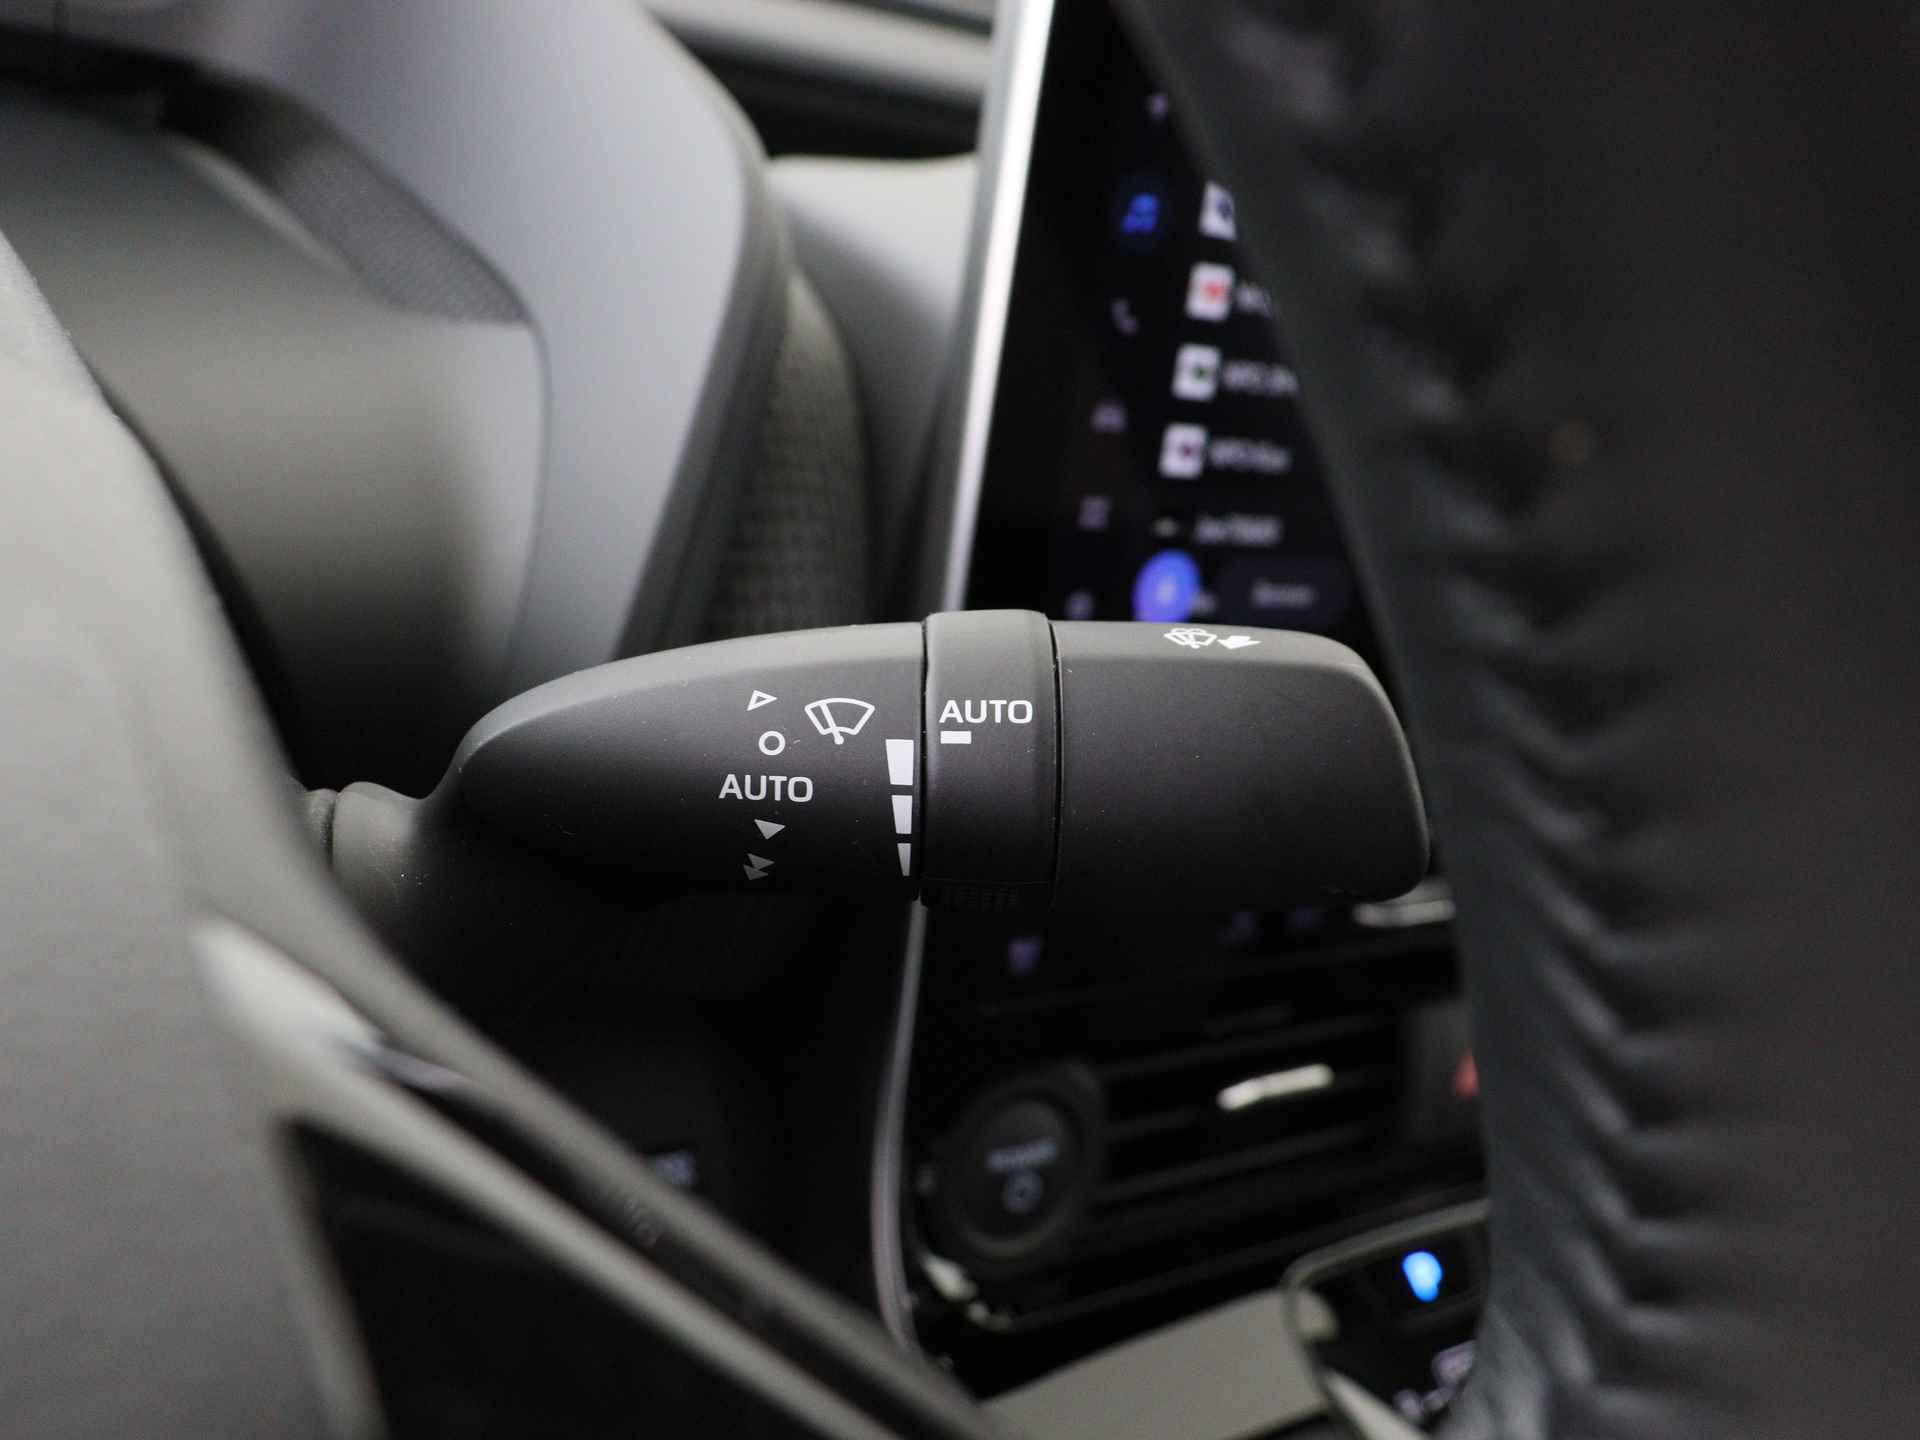 Toyota Bz4x Launch Edition Premium Bi-Tone uitvoering | Navigatie | Stoel&stuur verwarming | My T app | Panoramadak | Wegenbelasting vrij | Subsidie €2000,- aanvraag mogelijk. - 21/48